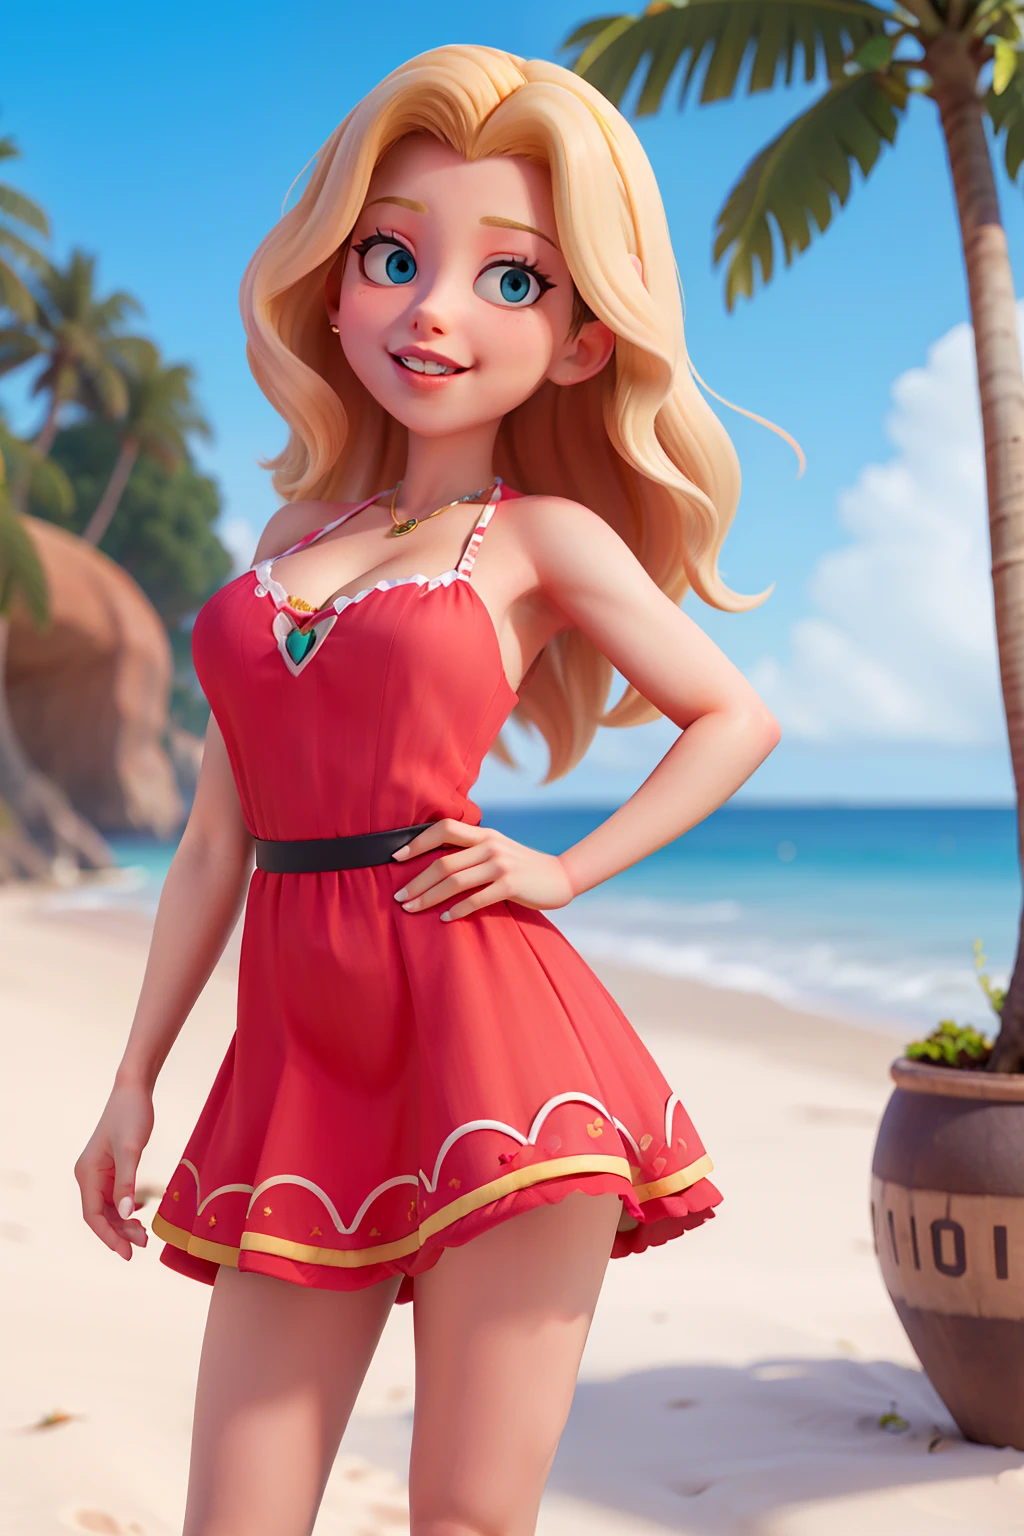 mulher blonde, praia, bikini, decote, vaidosa, vestido rosa, batom vermelho, lábios grandes, uma personagem alegre no estilo Disney Pixar